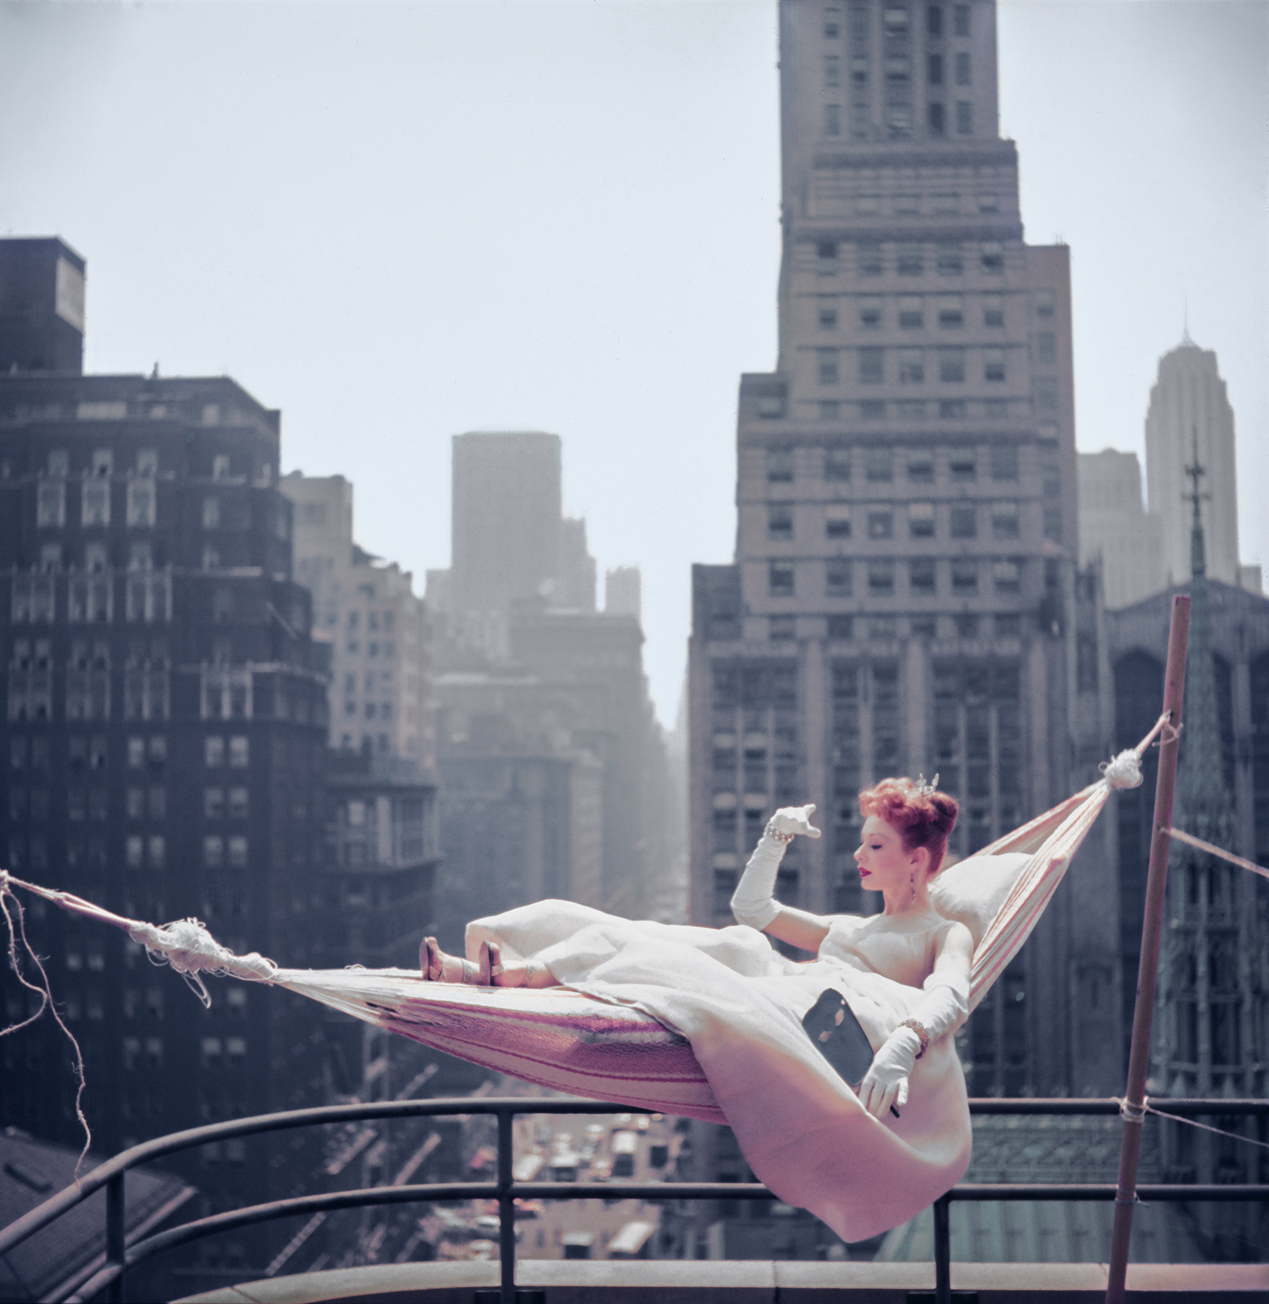 Η ηθοποιός και χορεύτρια Γκουέν Βερντόν φωτογραφίζεται για το περιοδικό «Look», στη Νέα Υόρκη, το 1953